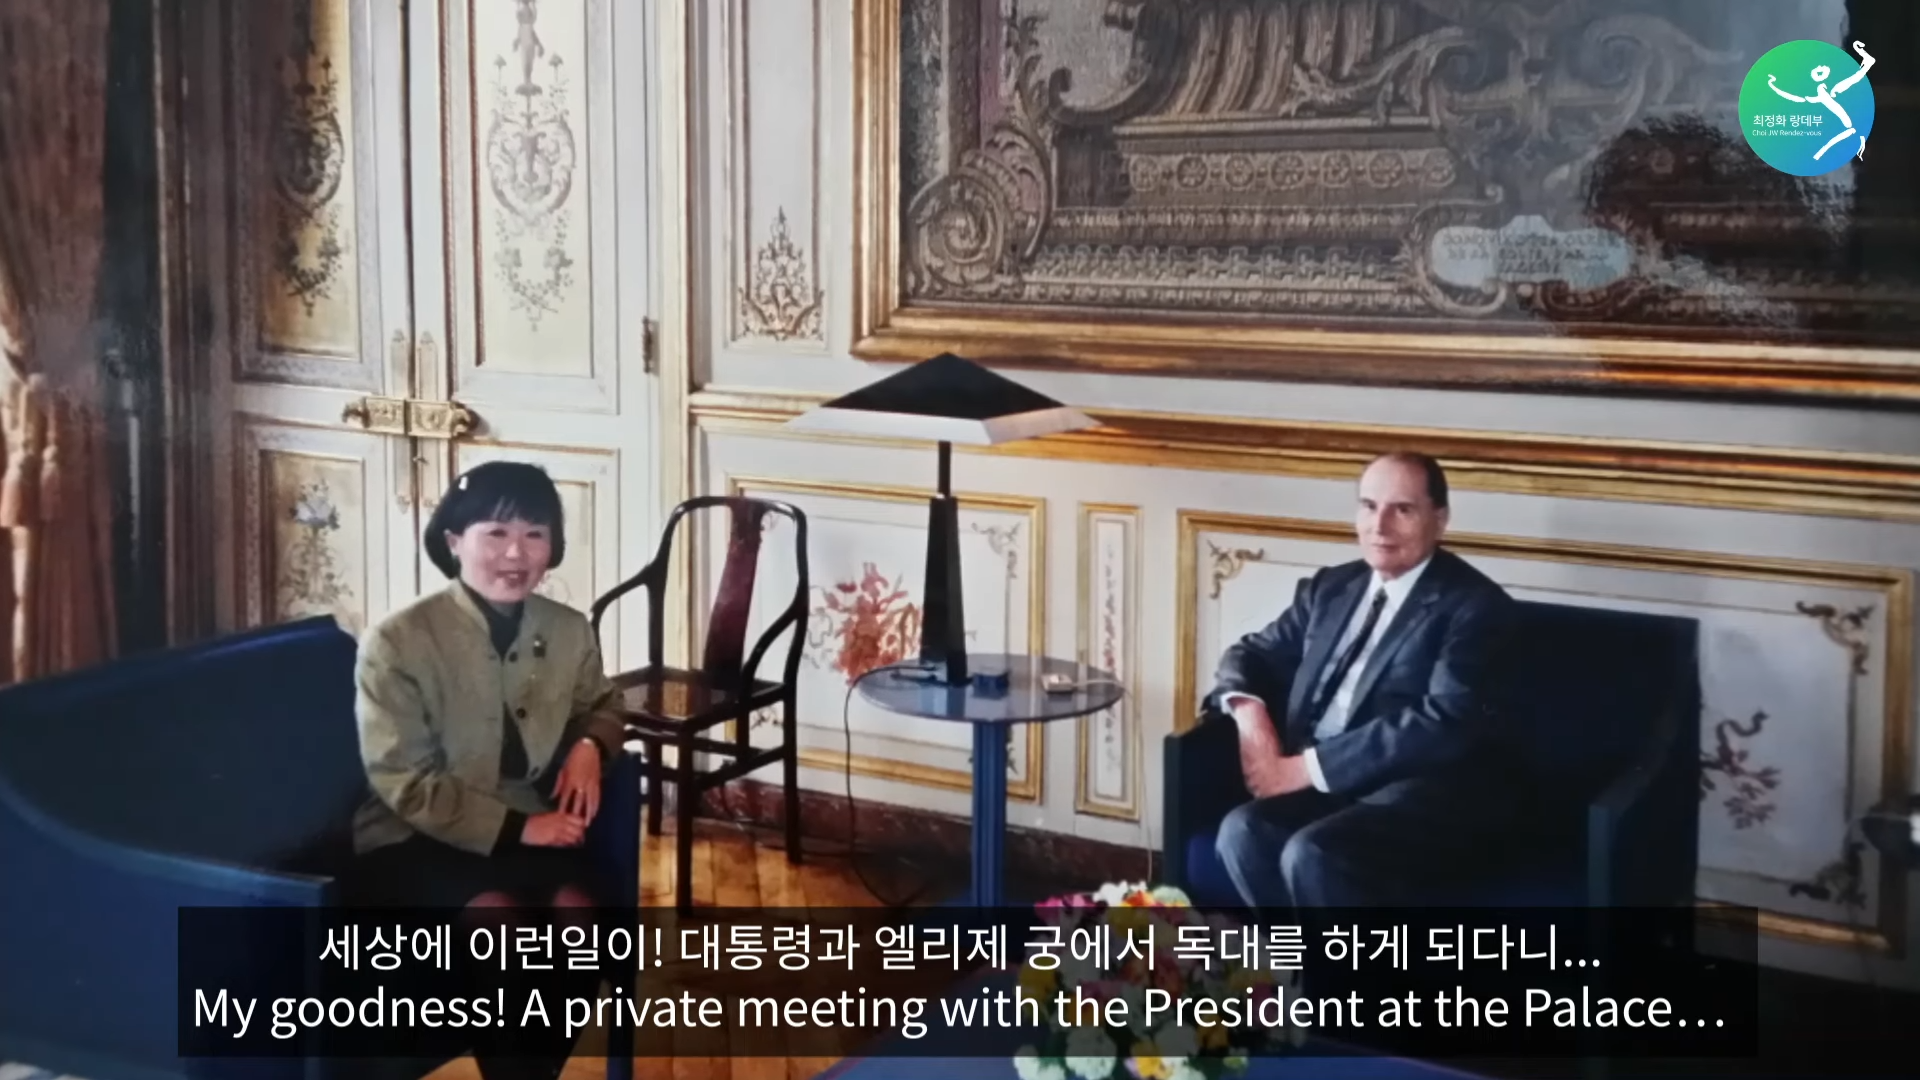 프랑스 대통령과 라붐의 소피마르소가 한국에서 만났을 때 일어난 일_ 엘리제궁에서 독대했을 때 나눈 이야기_ 0-0 screenshot.png